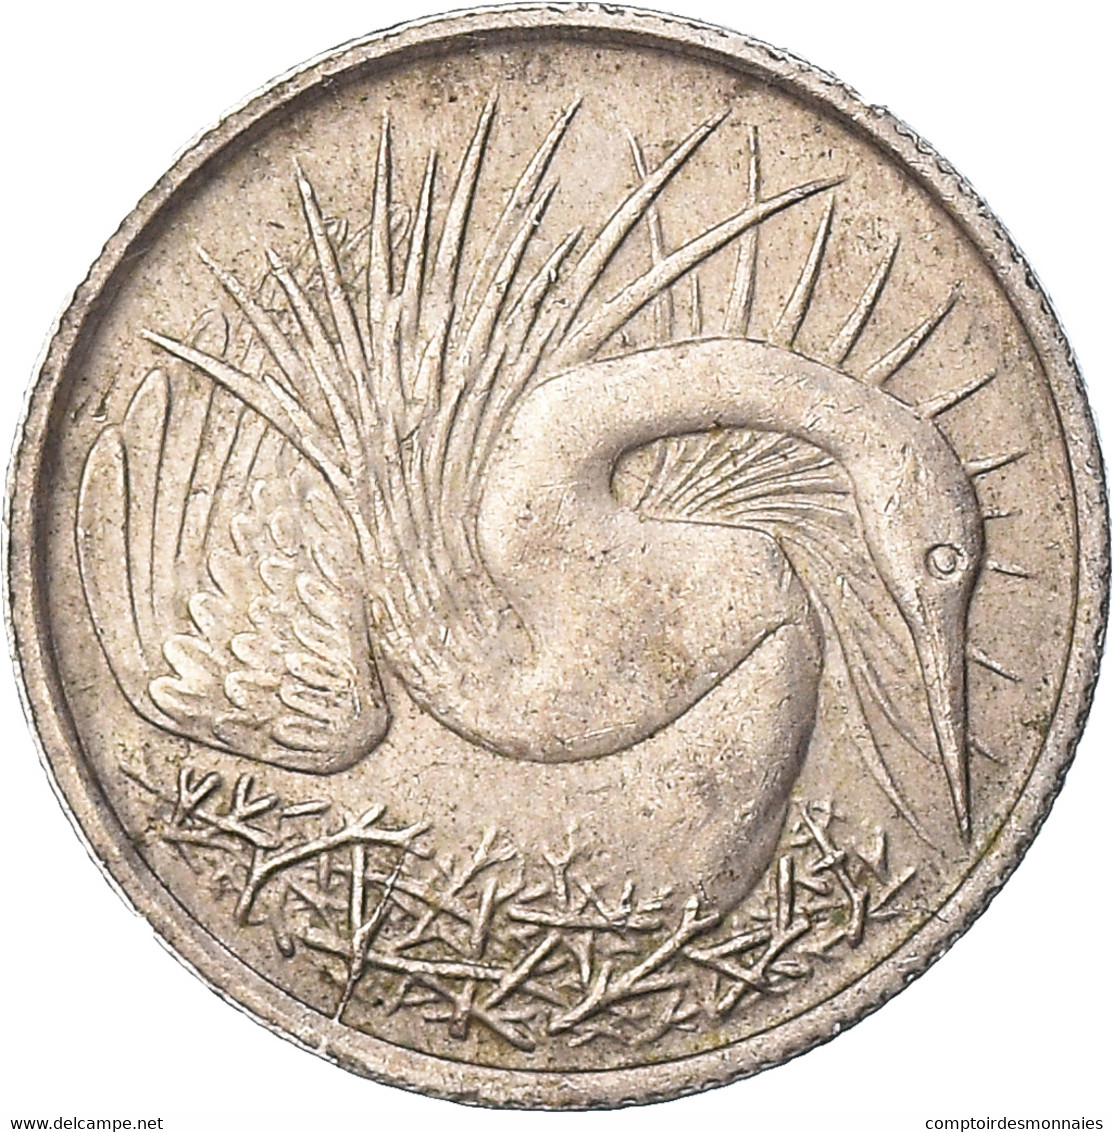 Monnaie, Singapour, 5 Cents, 1967 - Singapour